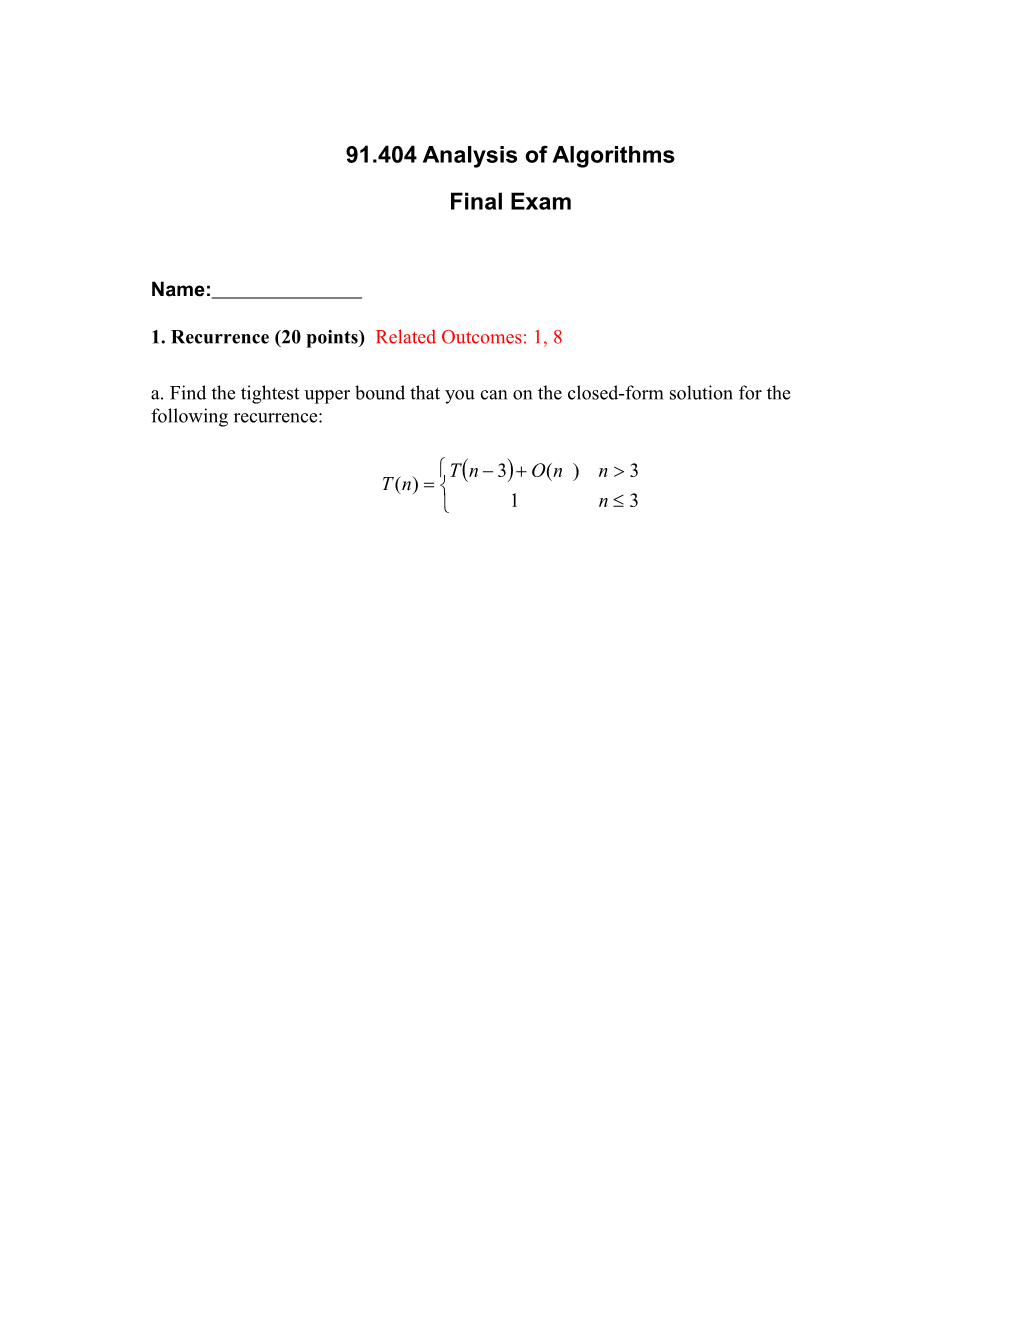 CS4321 Introduction to Algorithms Final